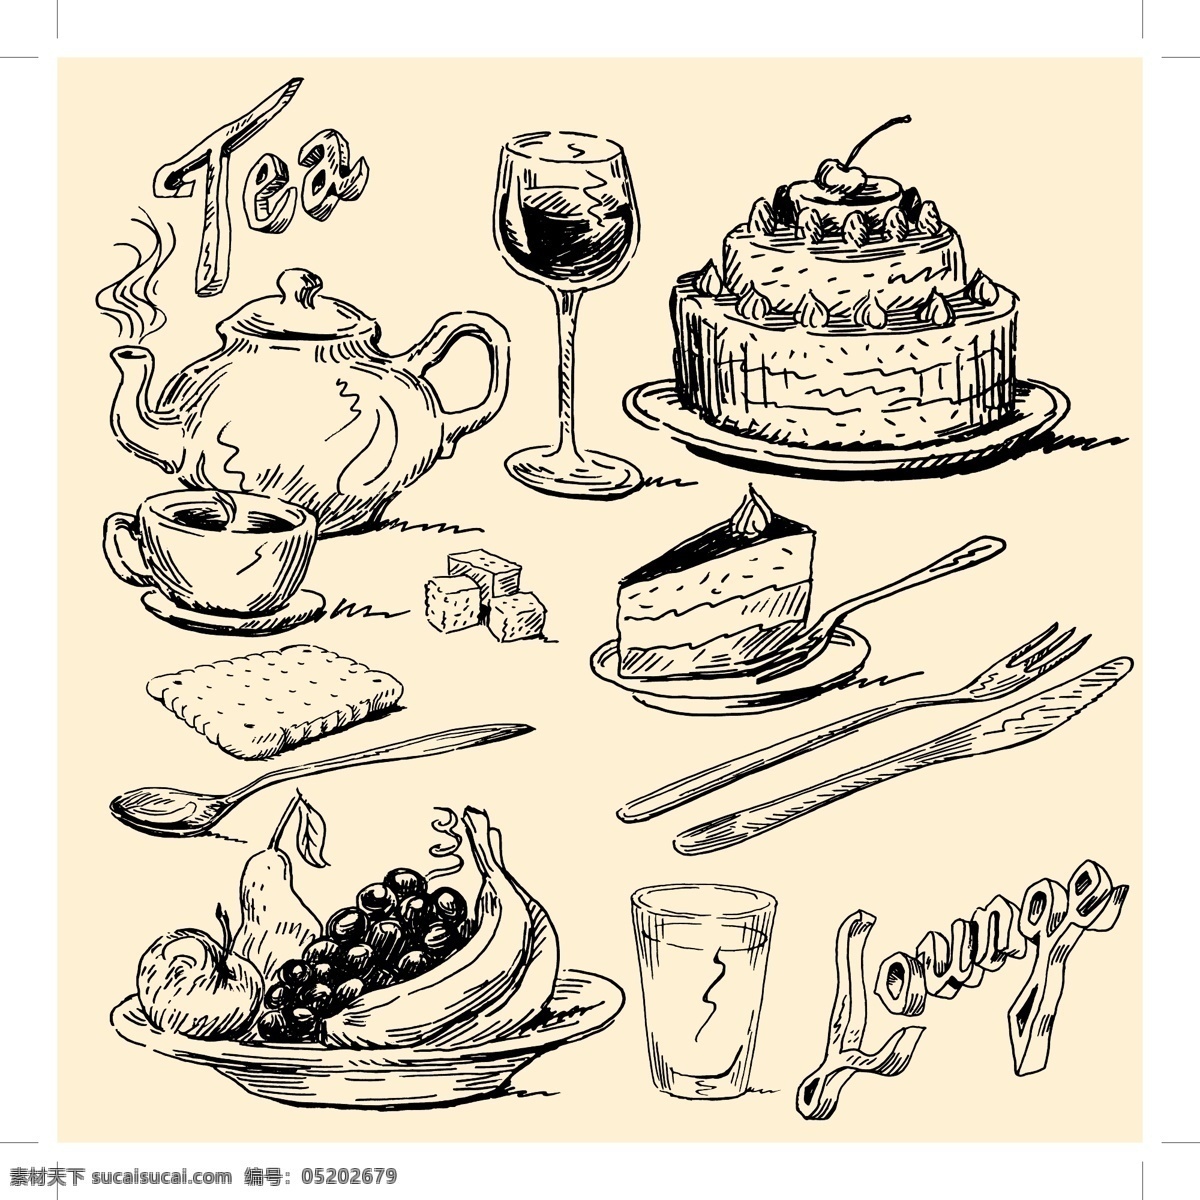 欧式手绘食物 手绘 蛋糕 线描 红酒 水果 杯子 饼干 生活百科 餐饮美食